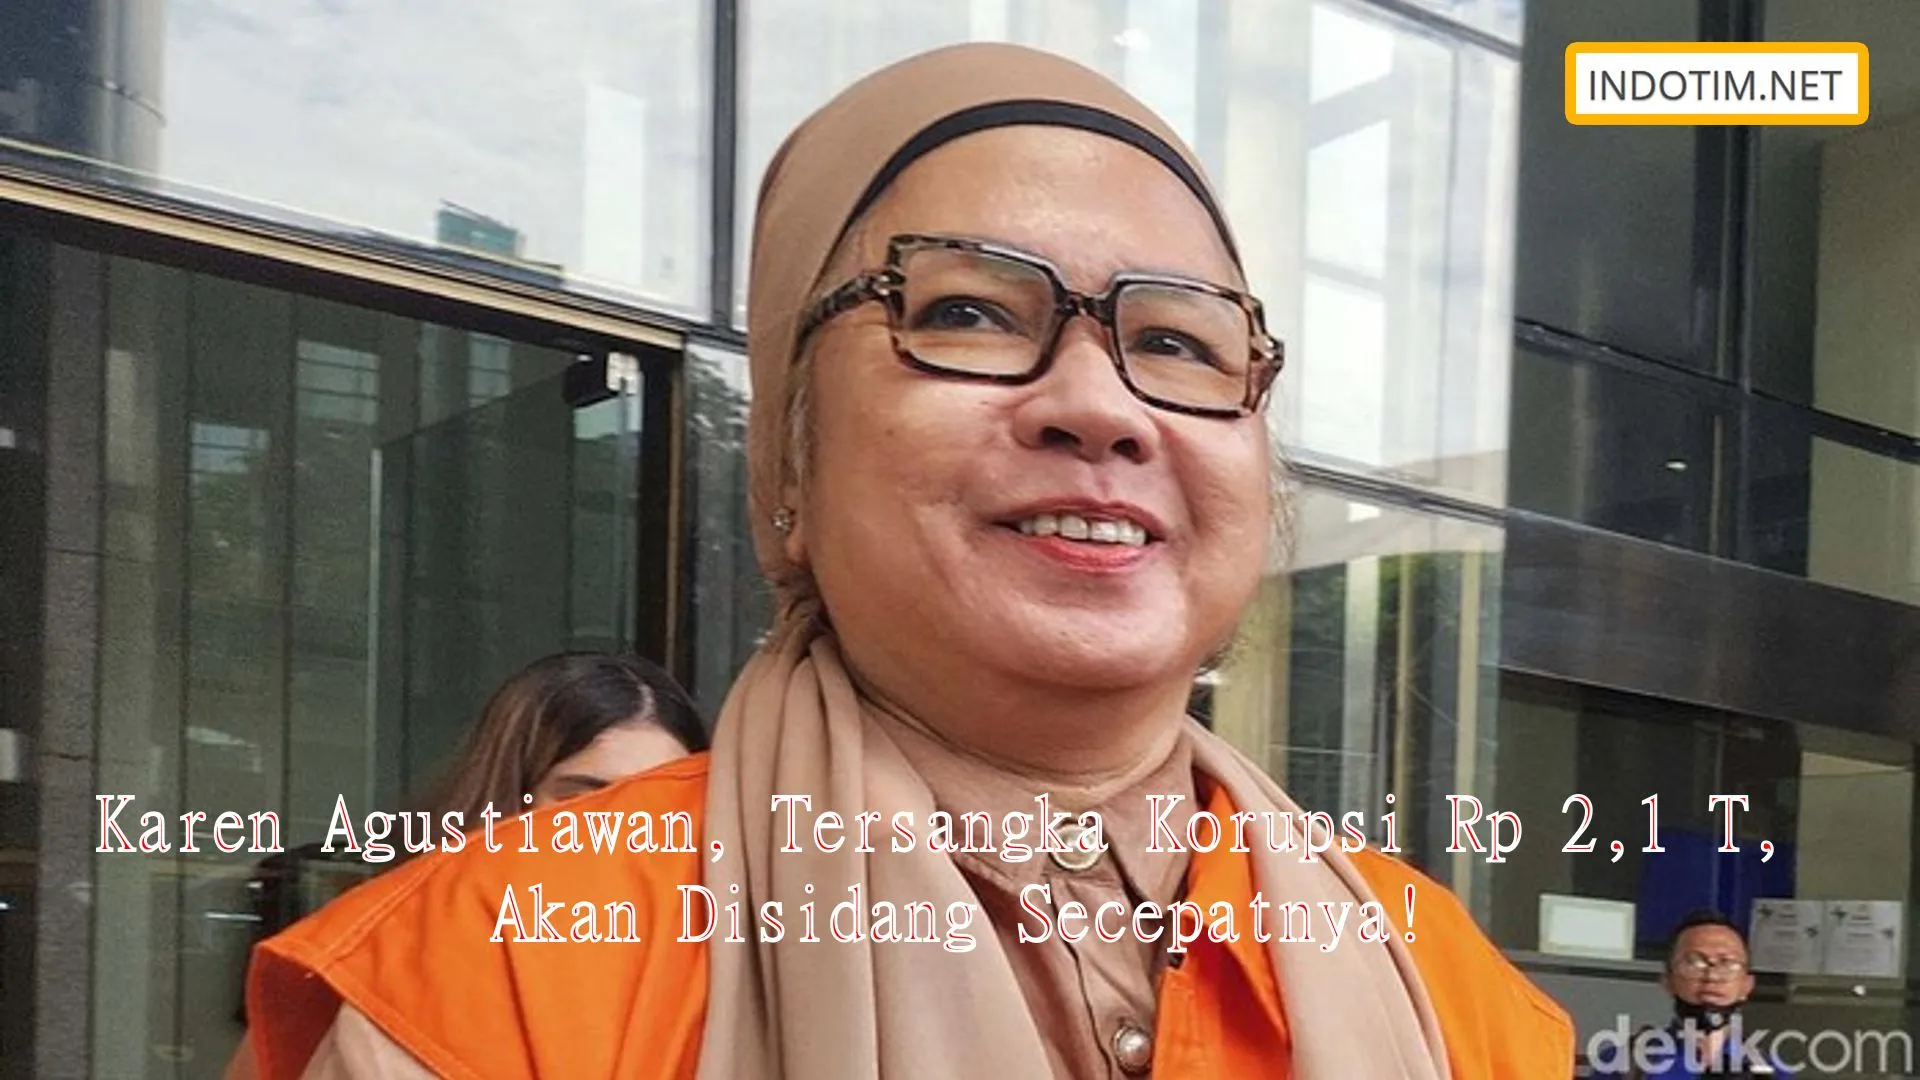 Karen Agustiawan, Tersangka Korupsi Rp 2,1 T, Akan Disidang Secepatnya!